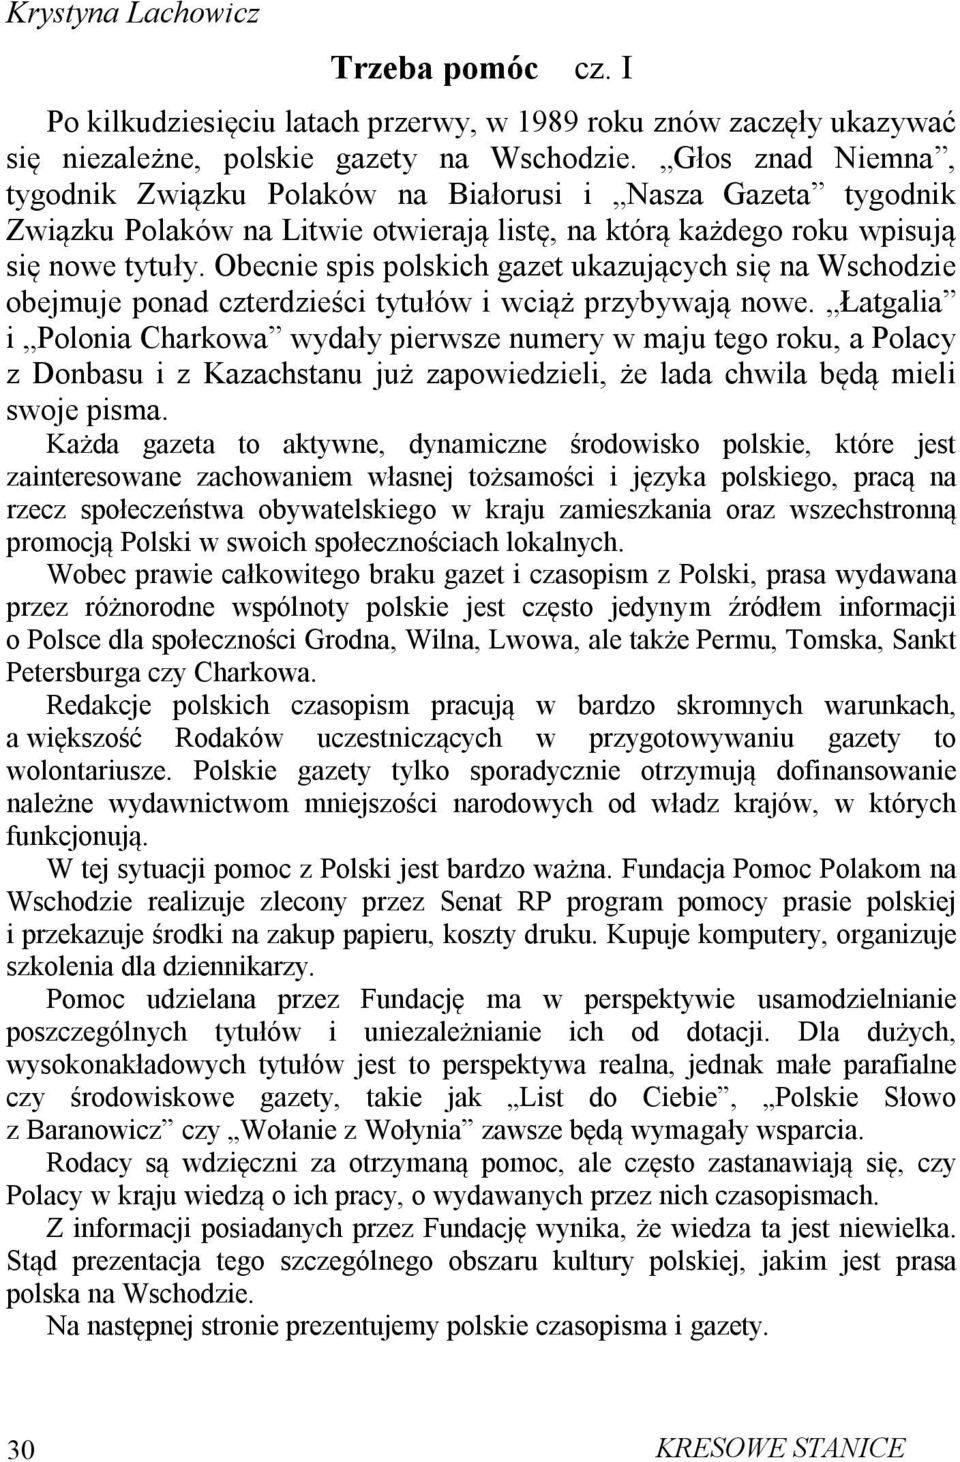 Obecnie spis polskich gazet ukazujących się na Wschodzie obejmuje ponad czterdzieści tytułów i wciąż przybywają nowe.